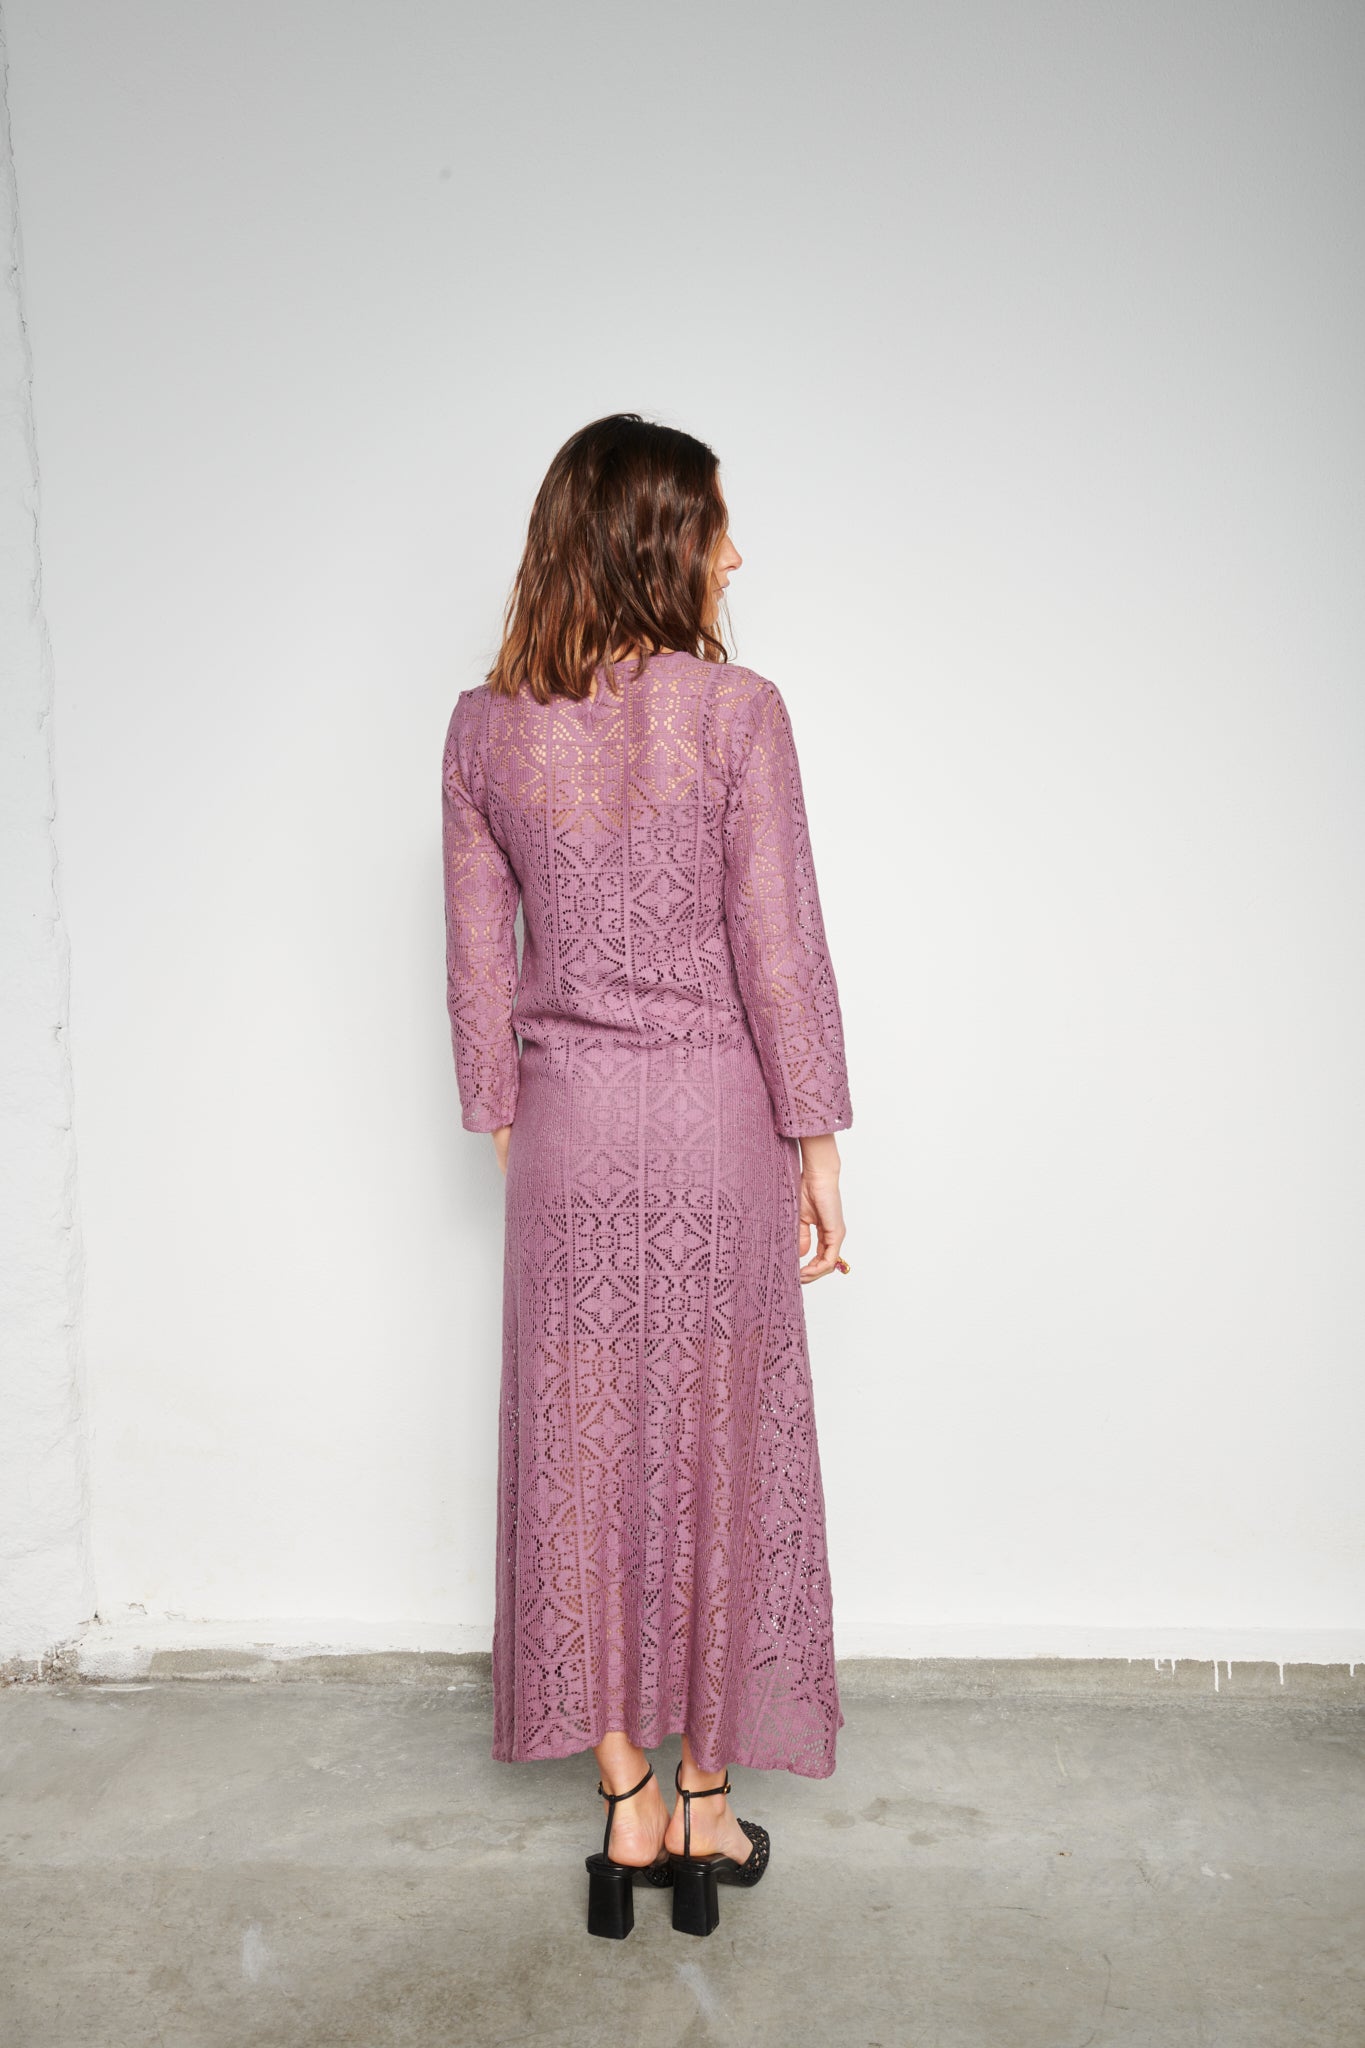 Crochet-looking Beach Dress in plum